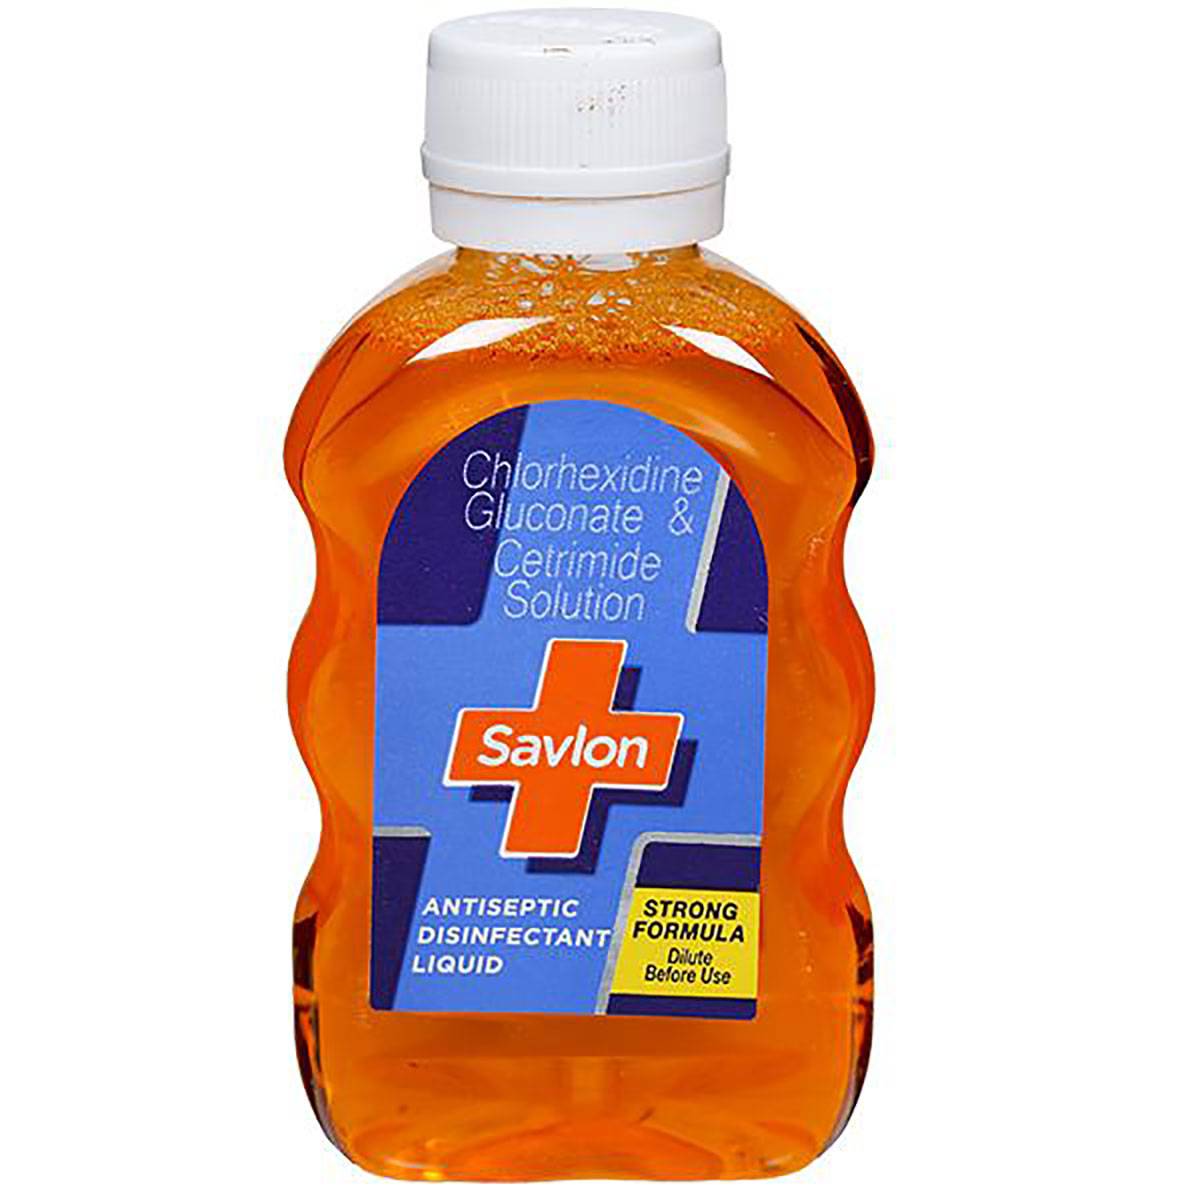 Savlon Antiseptic Disinfectant Liquid 50ml